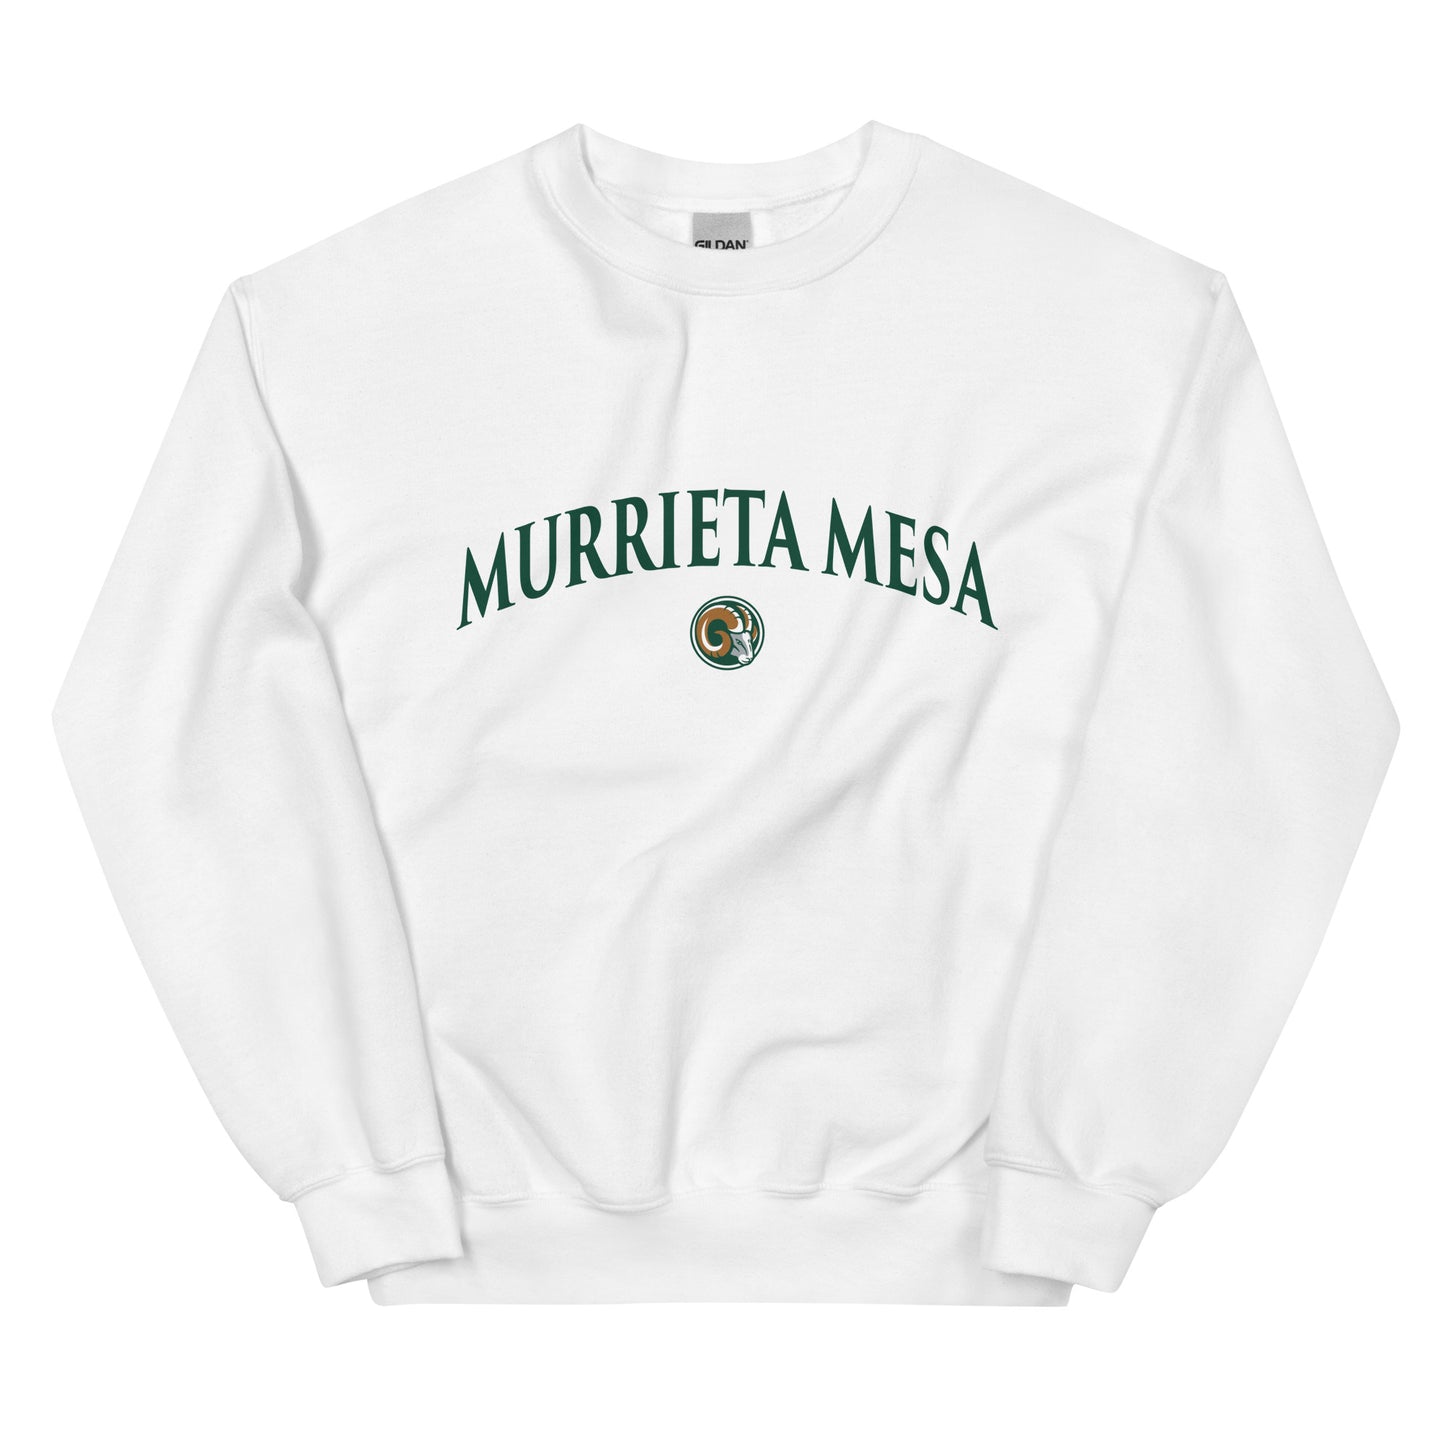 Murrieta Mesa Unisex Sweatshirt